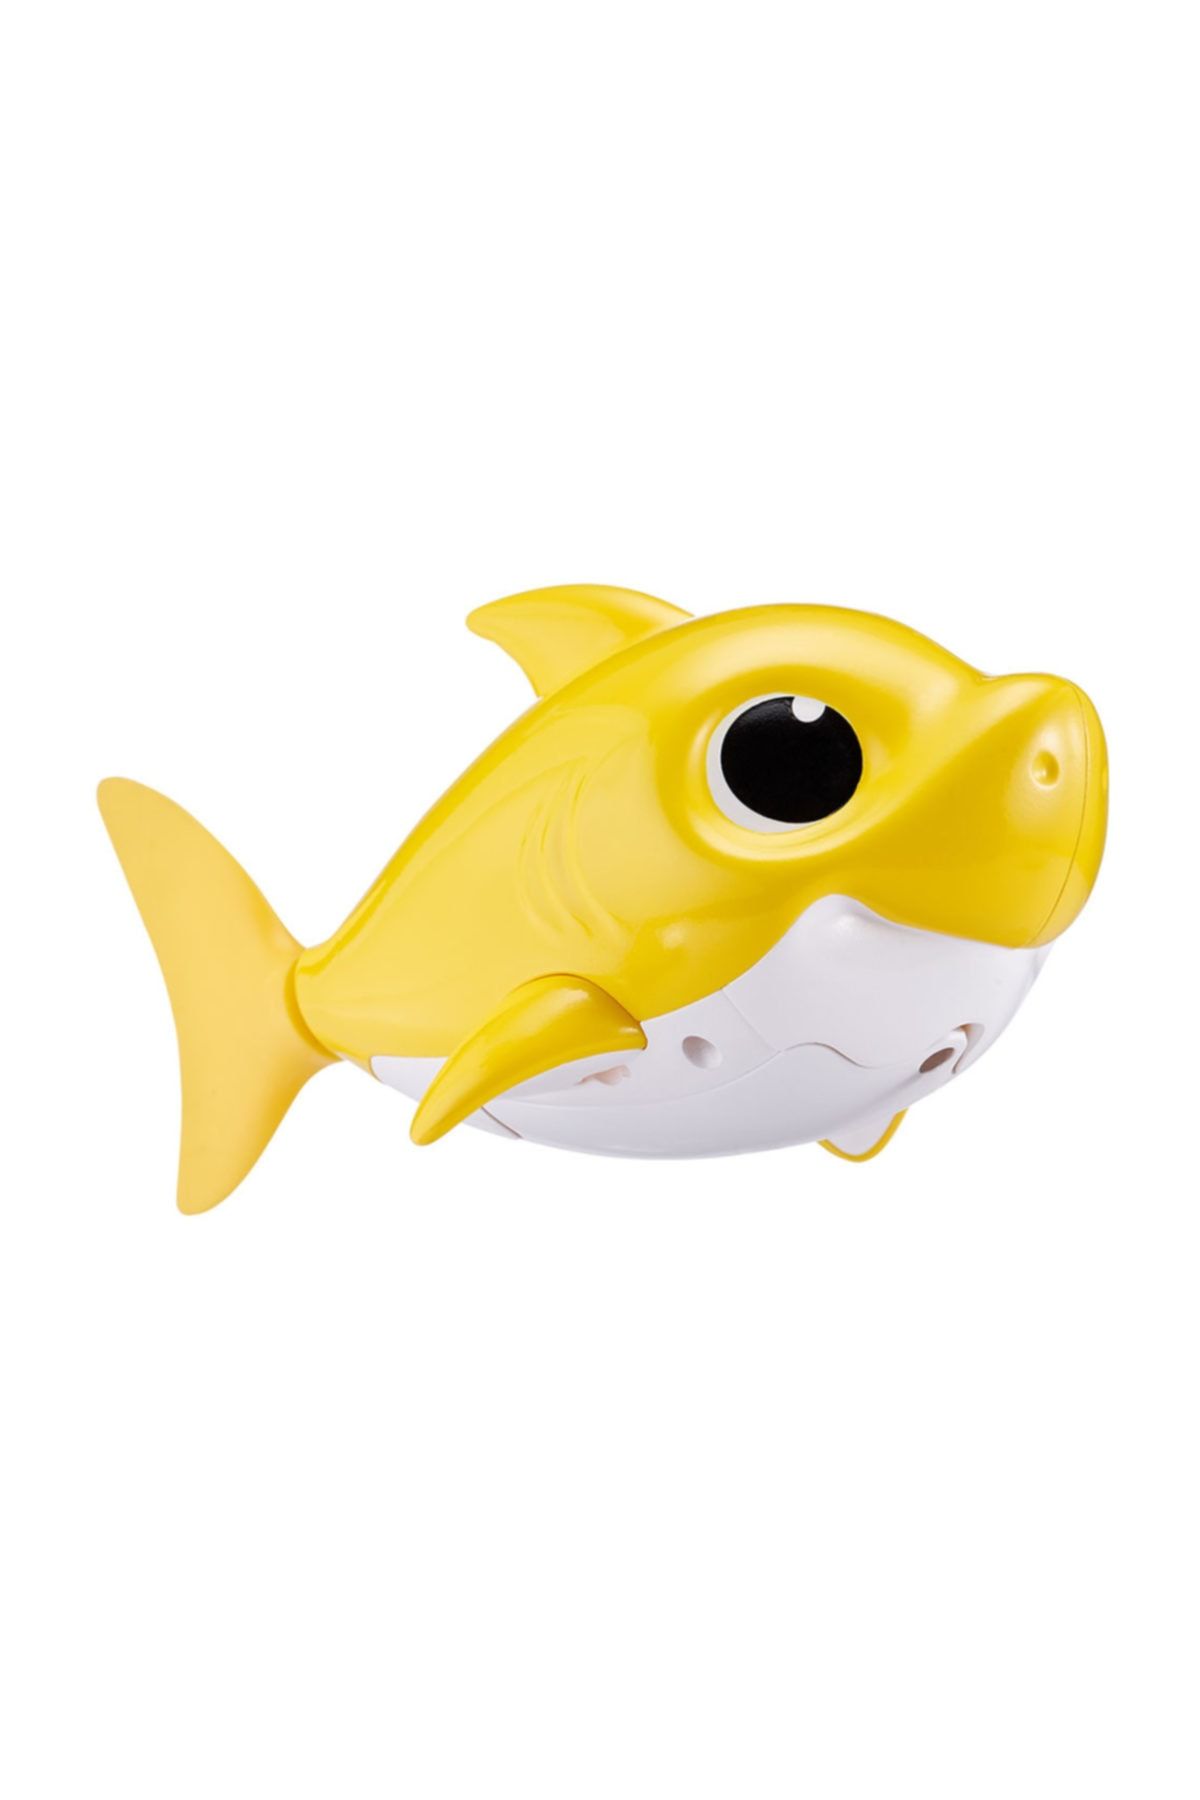 GIOCHI PREZIOSI Baby Shark with Sound and Swimming Shark Figure Yellow